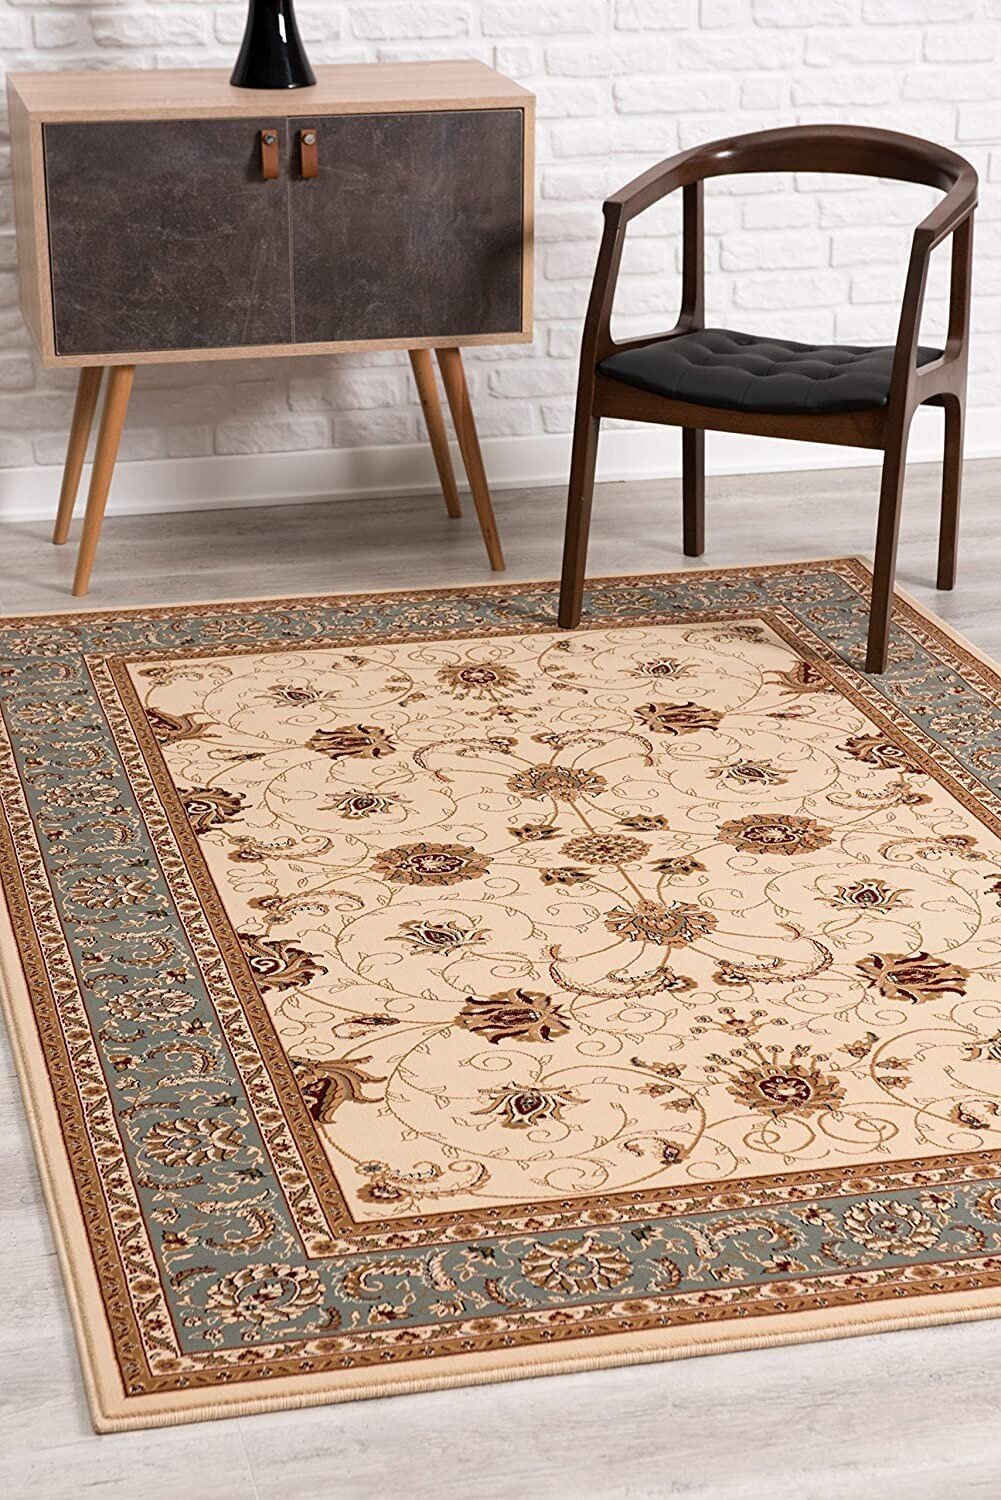 Inspiration Indoor-Outdoor Olefin Carpet Area Rug